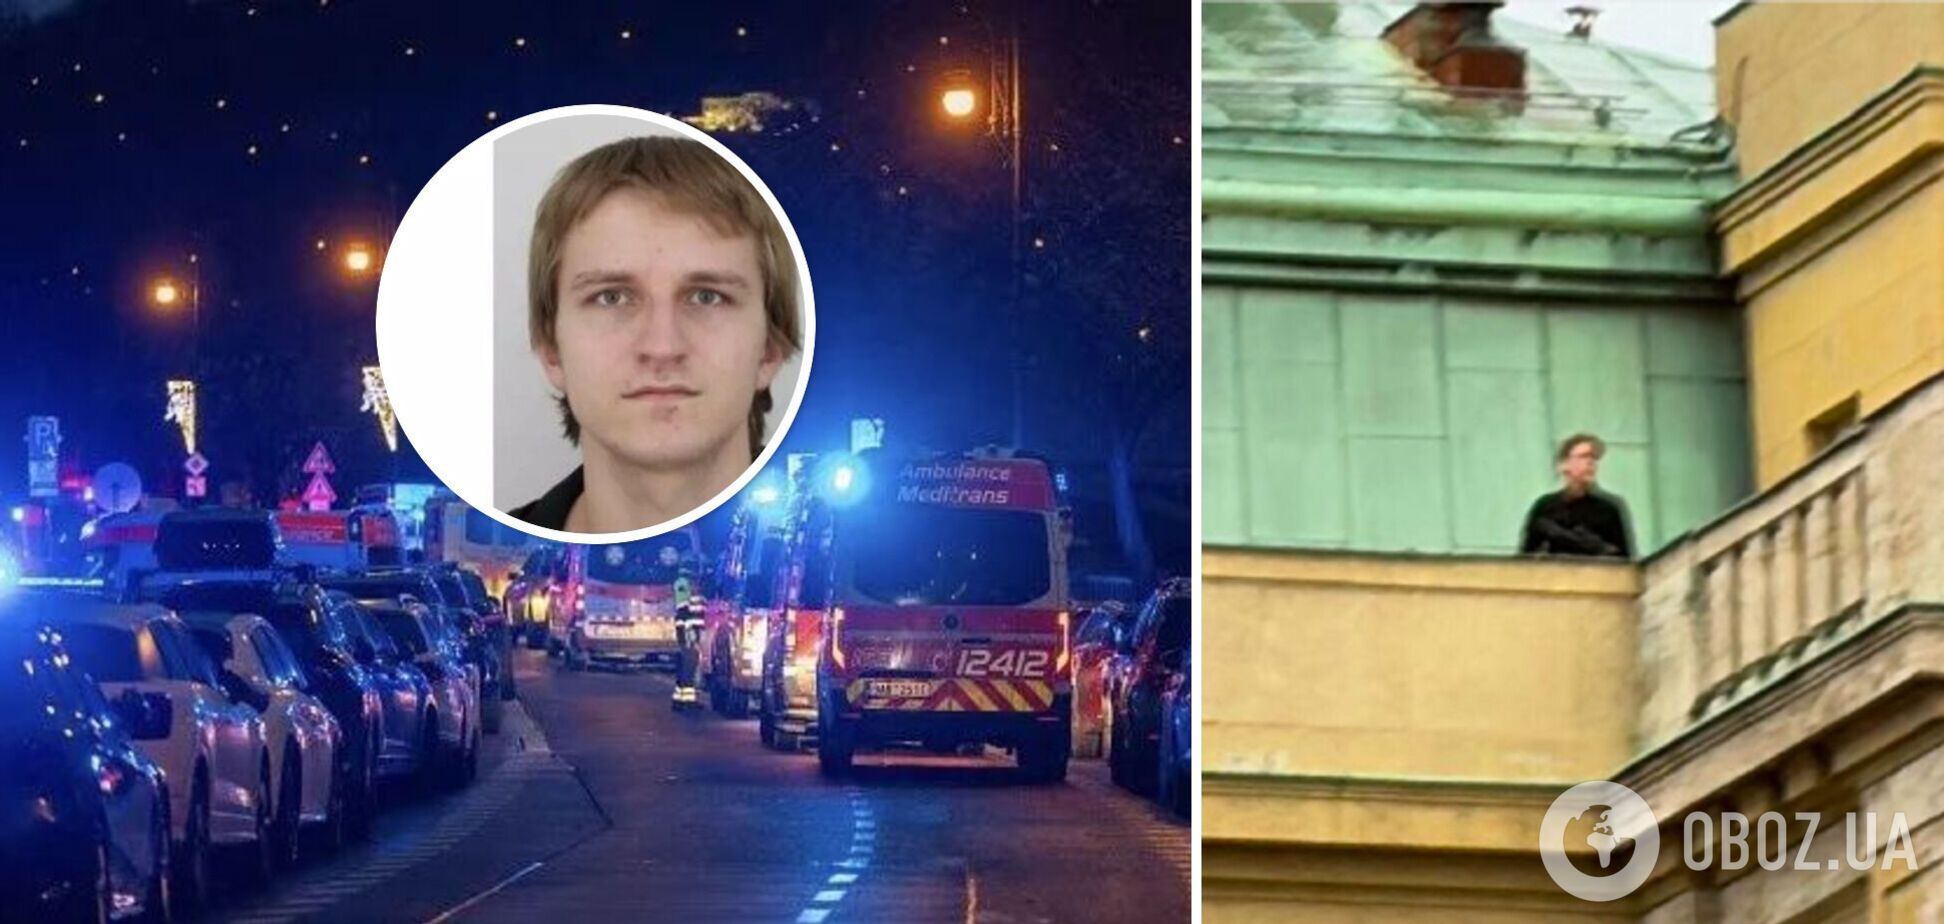 Отца нападающего из университета Праги нашли убитым перед стрельбой